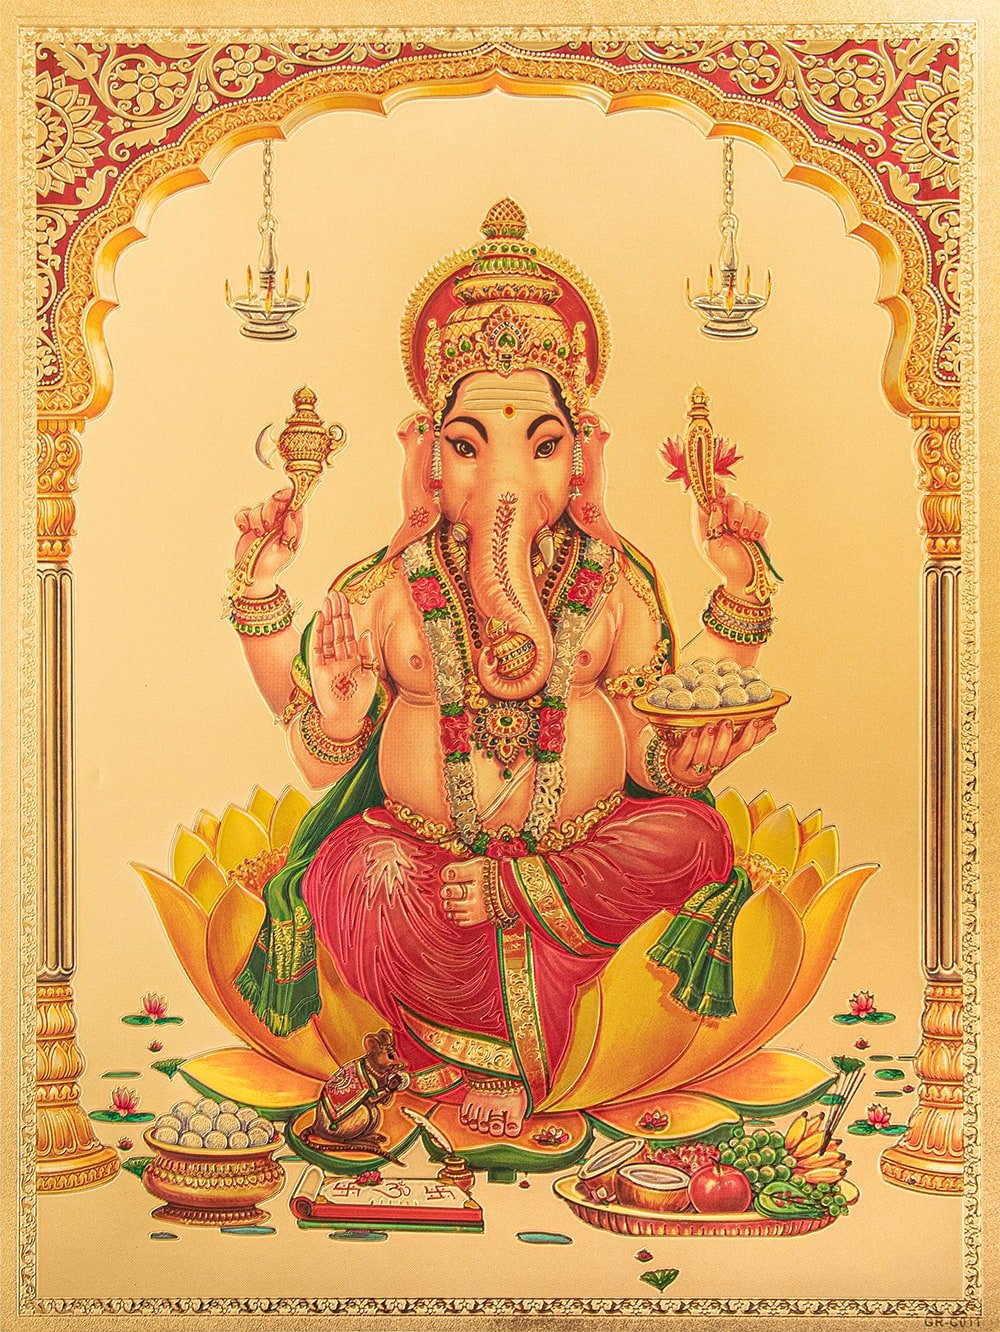 〔約40cm×約30cm〕インドのヒンドゥー神様ゴールドポスター - ガネーシャ 学問と商売の神様1枚目の説明写真です